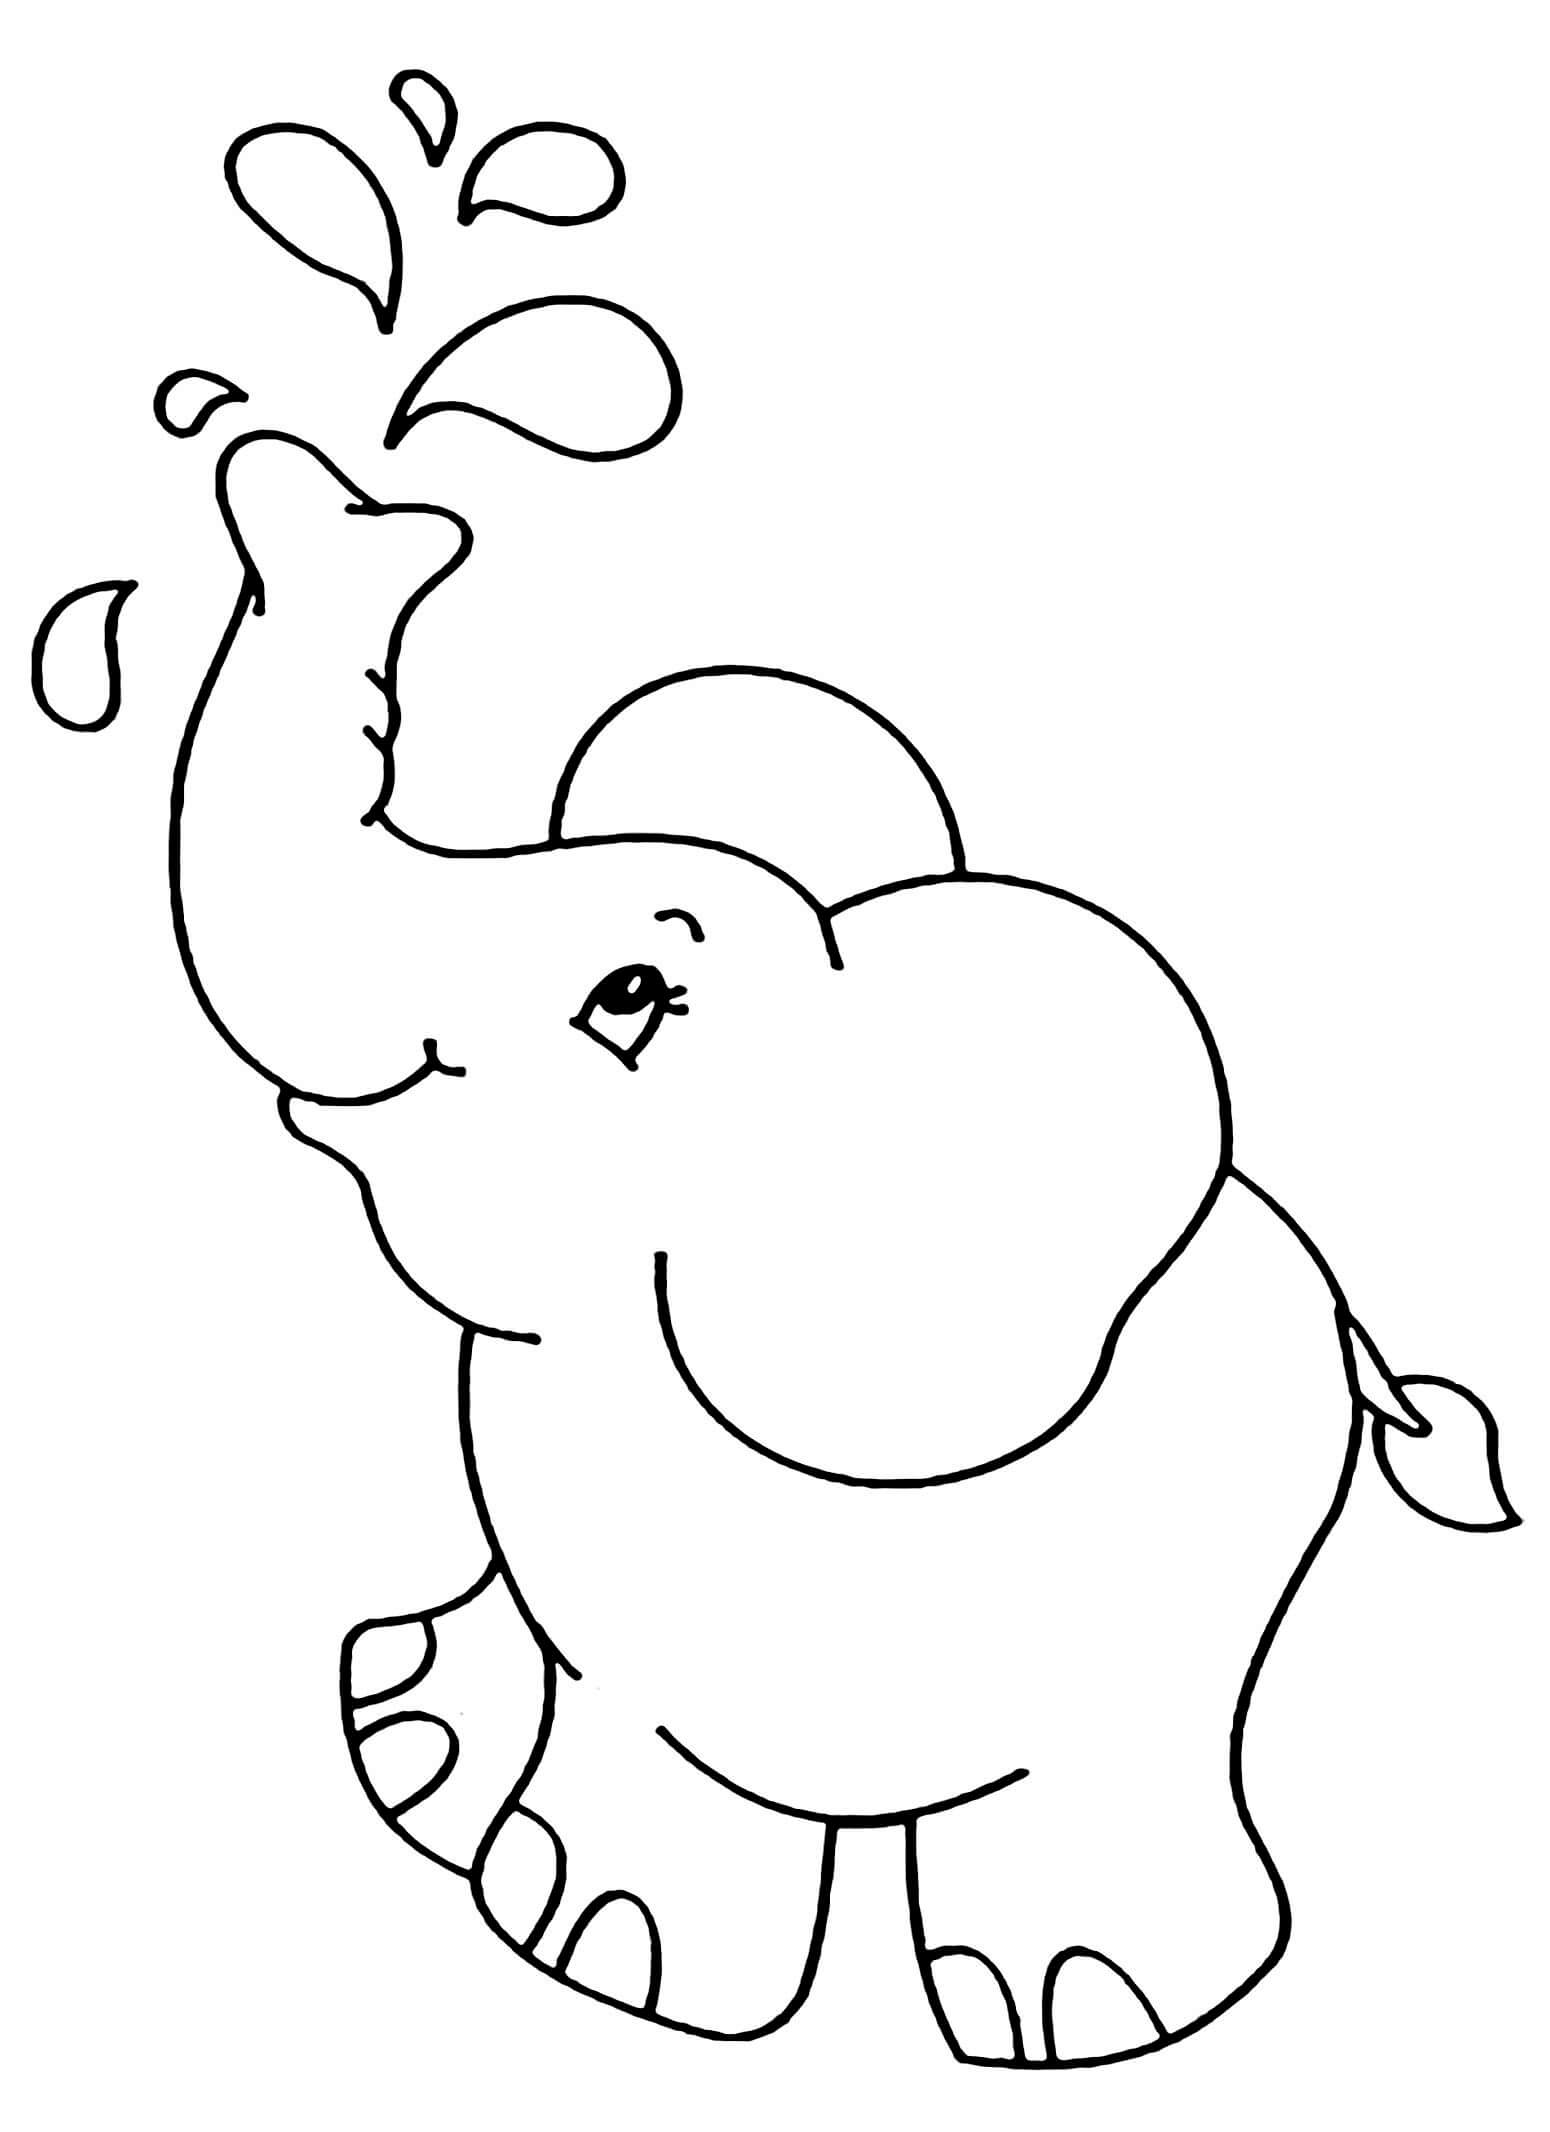 Elefante Sencillo Para Colorear Imprimir E Dibujar ColoringOnly Com